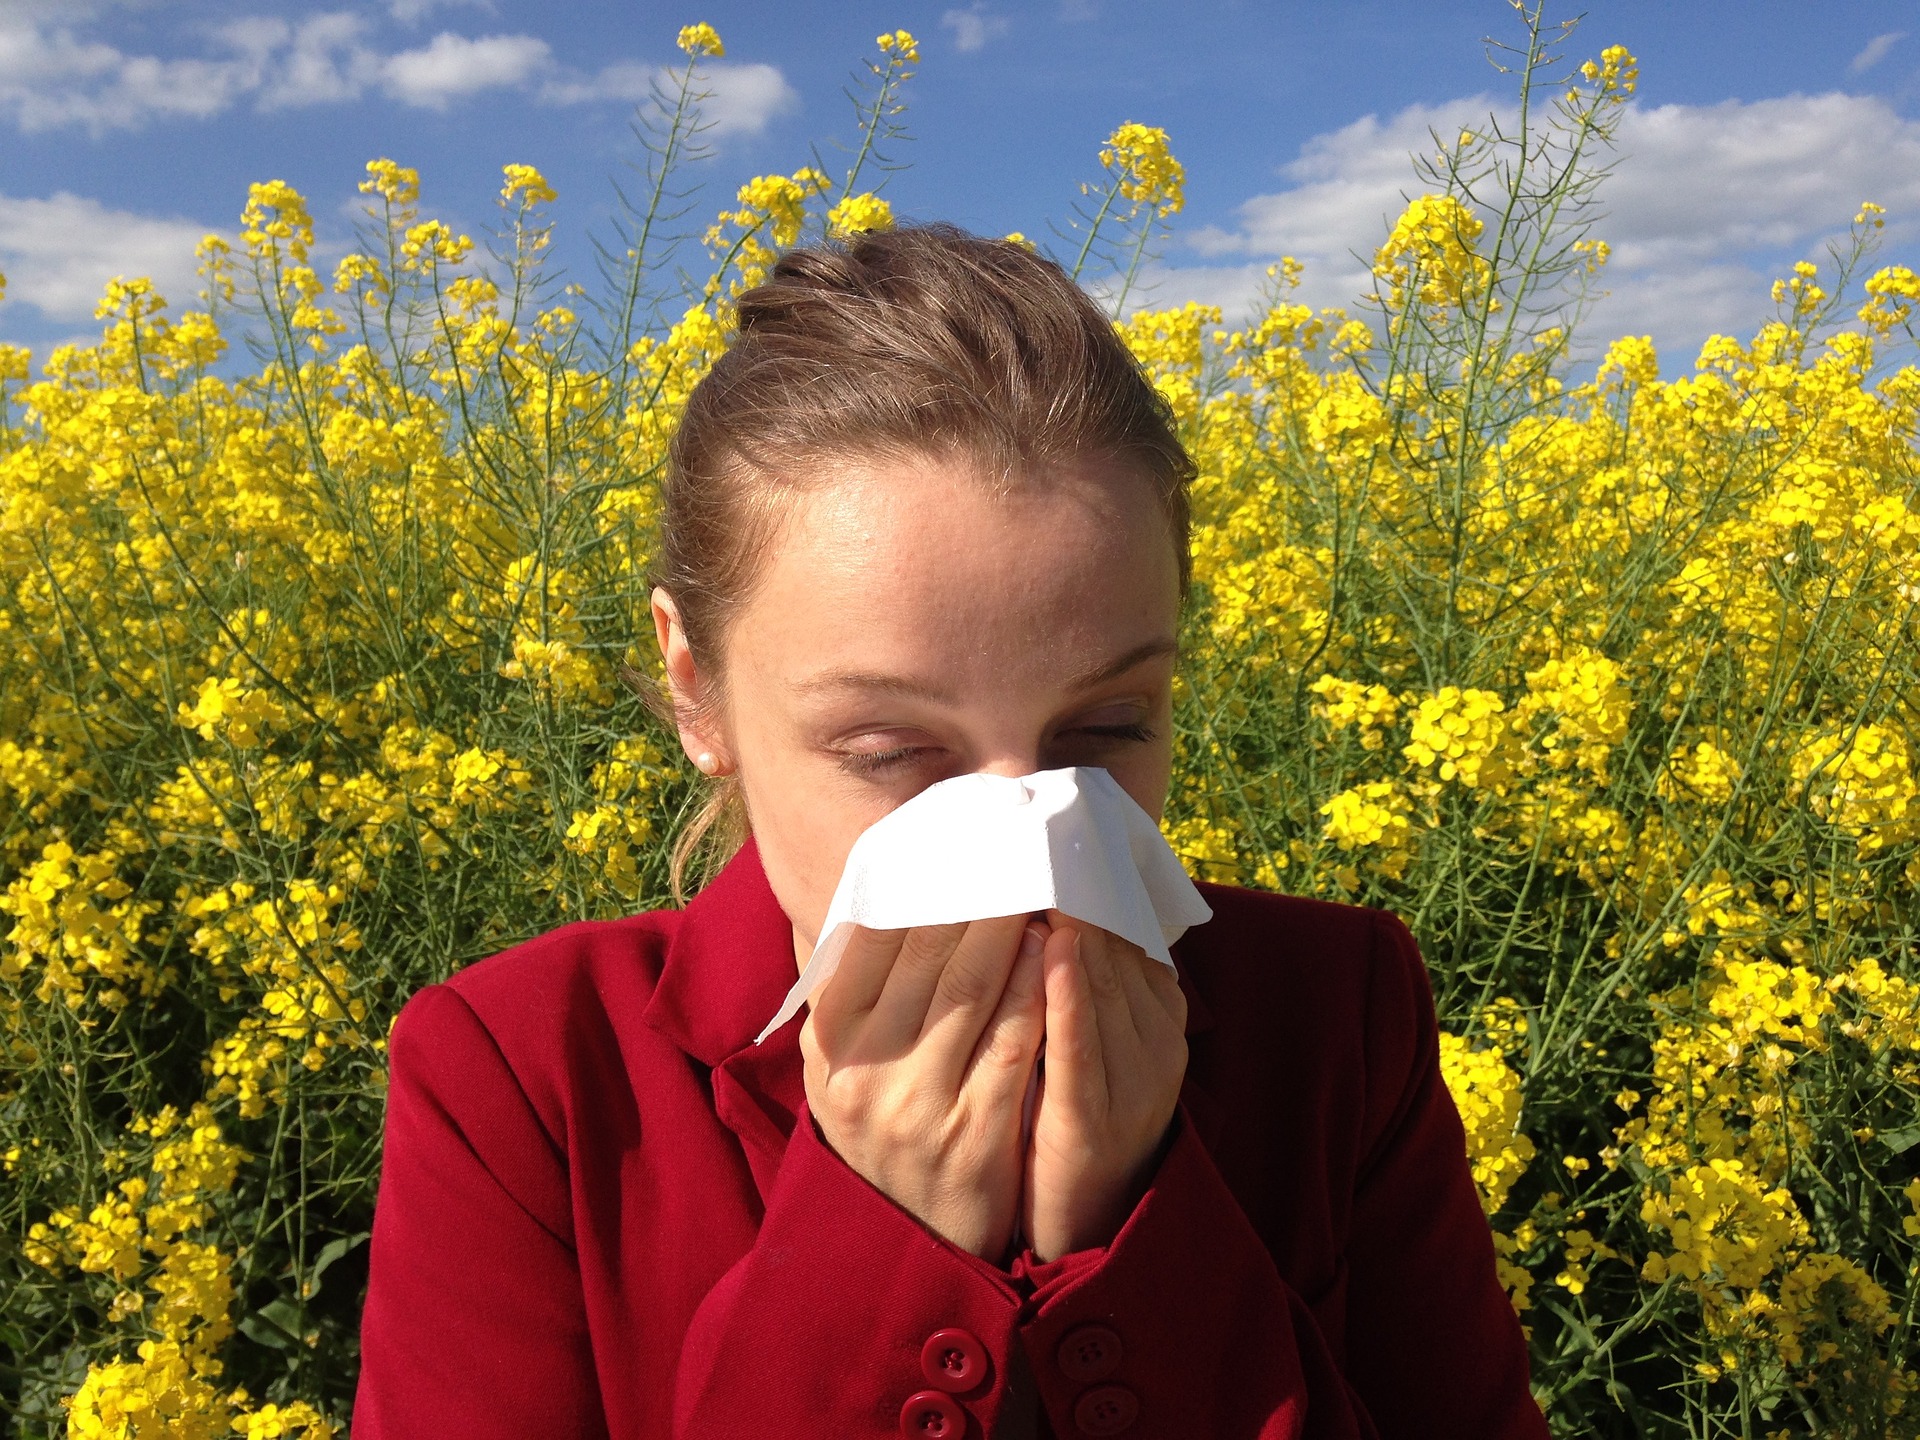 Máte vy alebo druhý rodič alergiu či astmu? To je jedna z prvých otázok, ktoré padnú v detskej alergologickej ambulancii. Lekári vedia, prečo sa pýtajú. Ak trpí chorobou jeden rodič, je riziko 40 percent, že dieťa ochorie tiež.

Ak trávy, roztoče či prach vadia mame aj otcovi, je pravdepodobnosť až 60-70 percent, že potomok na tom bude rovnako. Alergia matky pritom hrá v dedičnosti o niečo väčšiu úlohu.

V menšej miere sa dedia aj vlohy k astme. "O tom, či sa choroba rozvinie, mnohokrát rozhodujú ďalšie vplyvy, vrátane vonkajšieho prostredia, znečistenia ovzdušia či spôsobu stravovania," uvádza lekárka Jana Yanov.